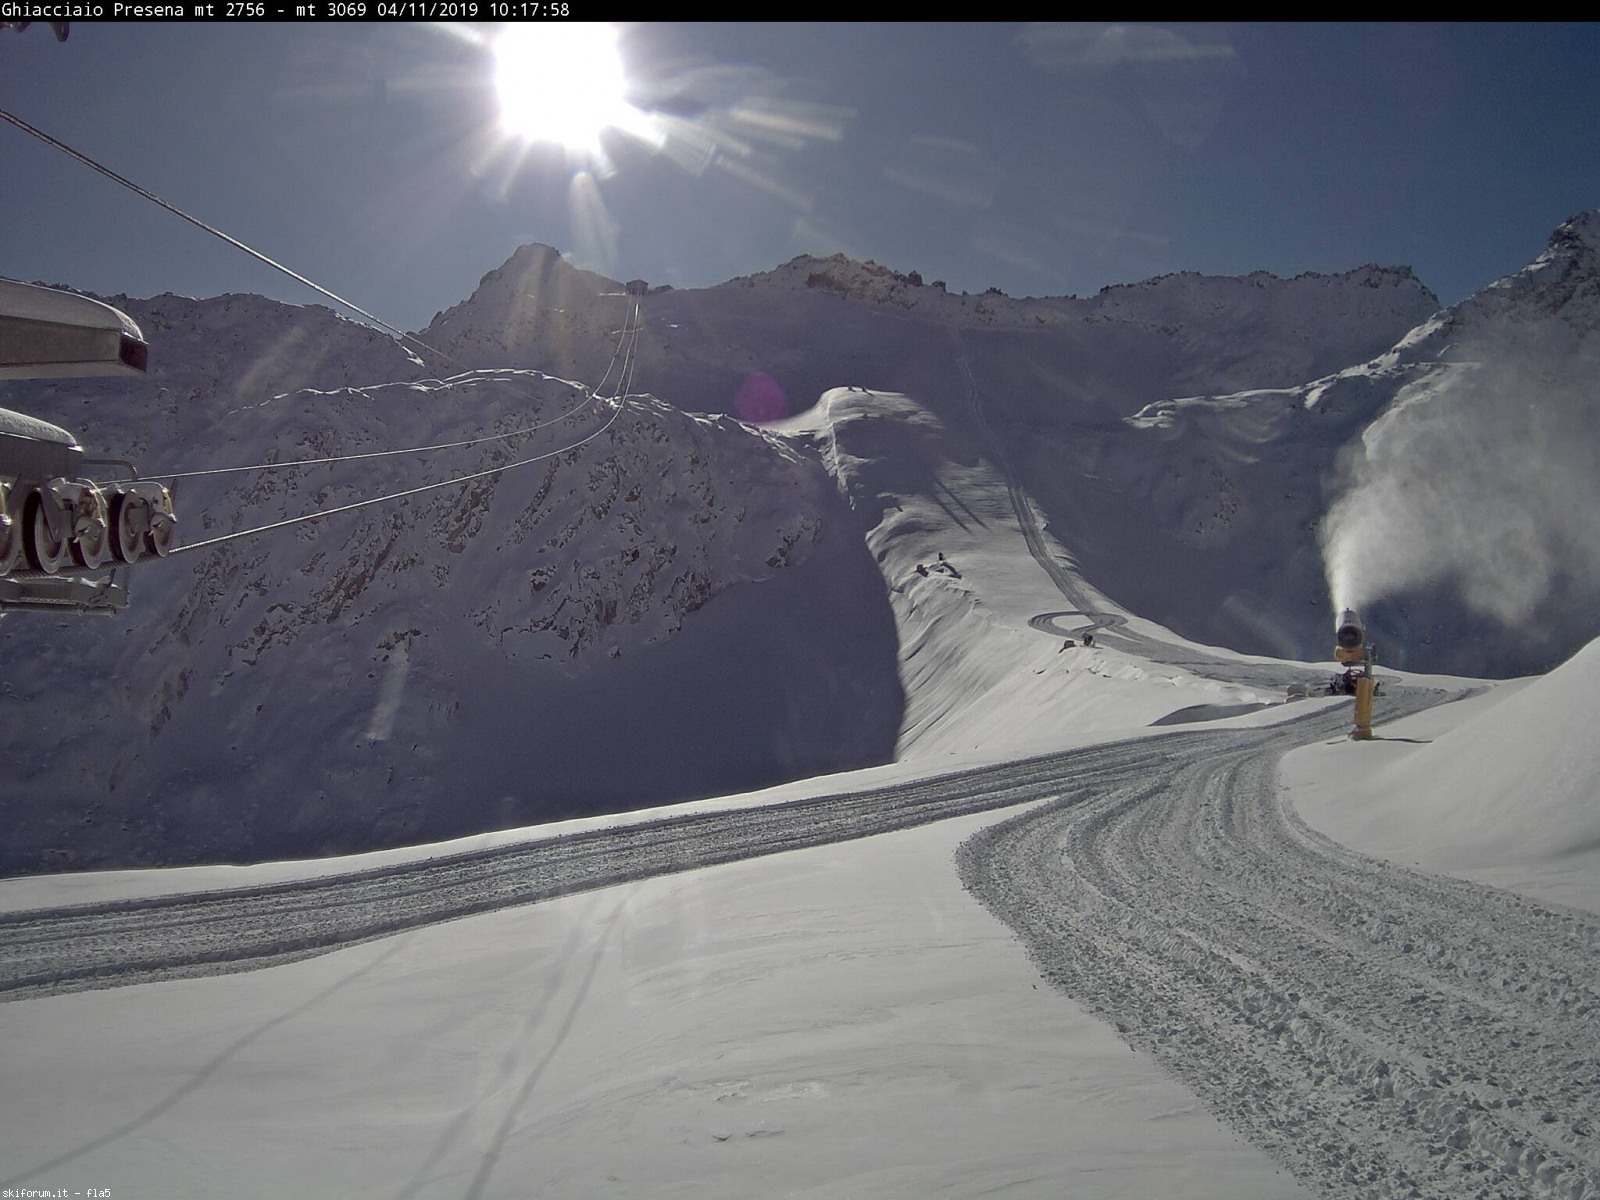 Adamello Ski - Situazione neve, impianti, piste | Page 241 | SkiForum -  Sci, turismo, sport e passione